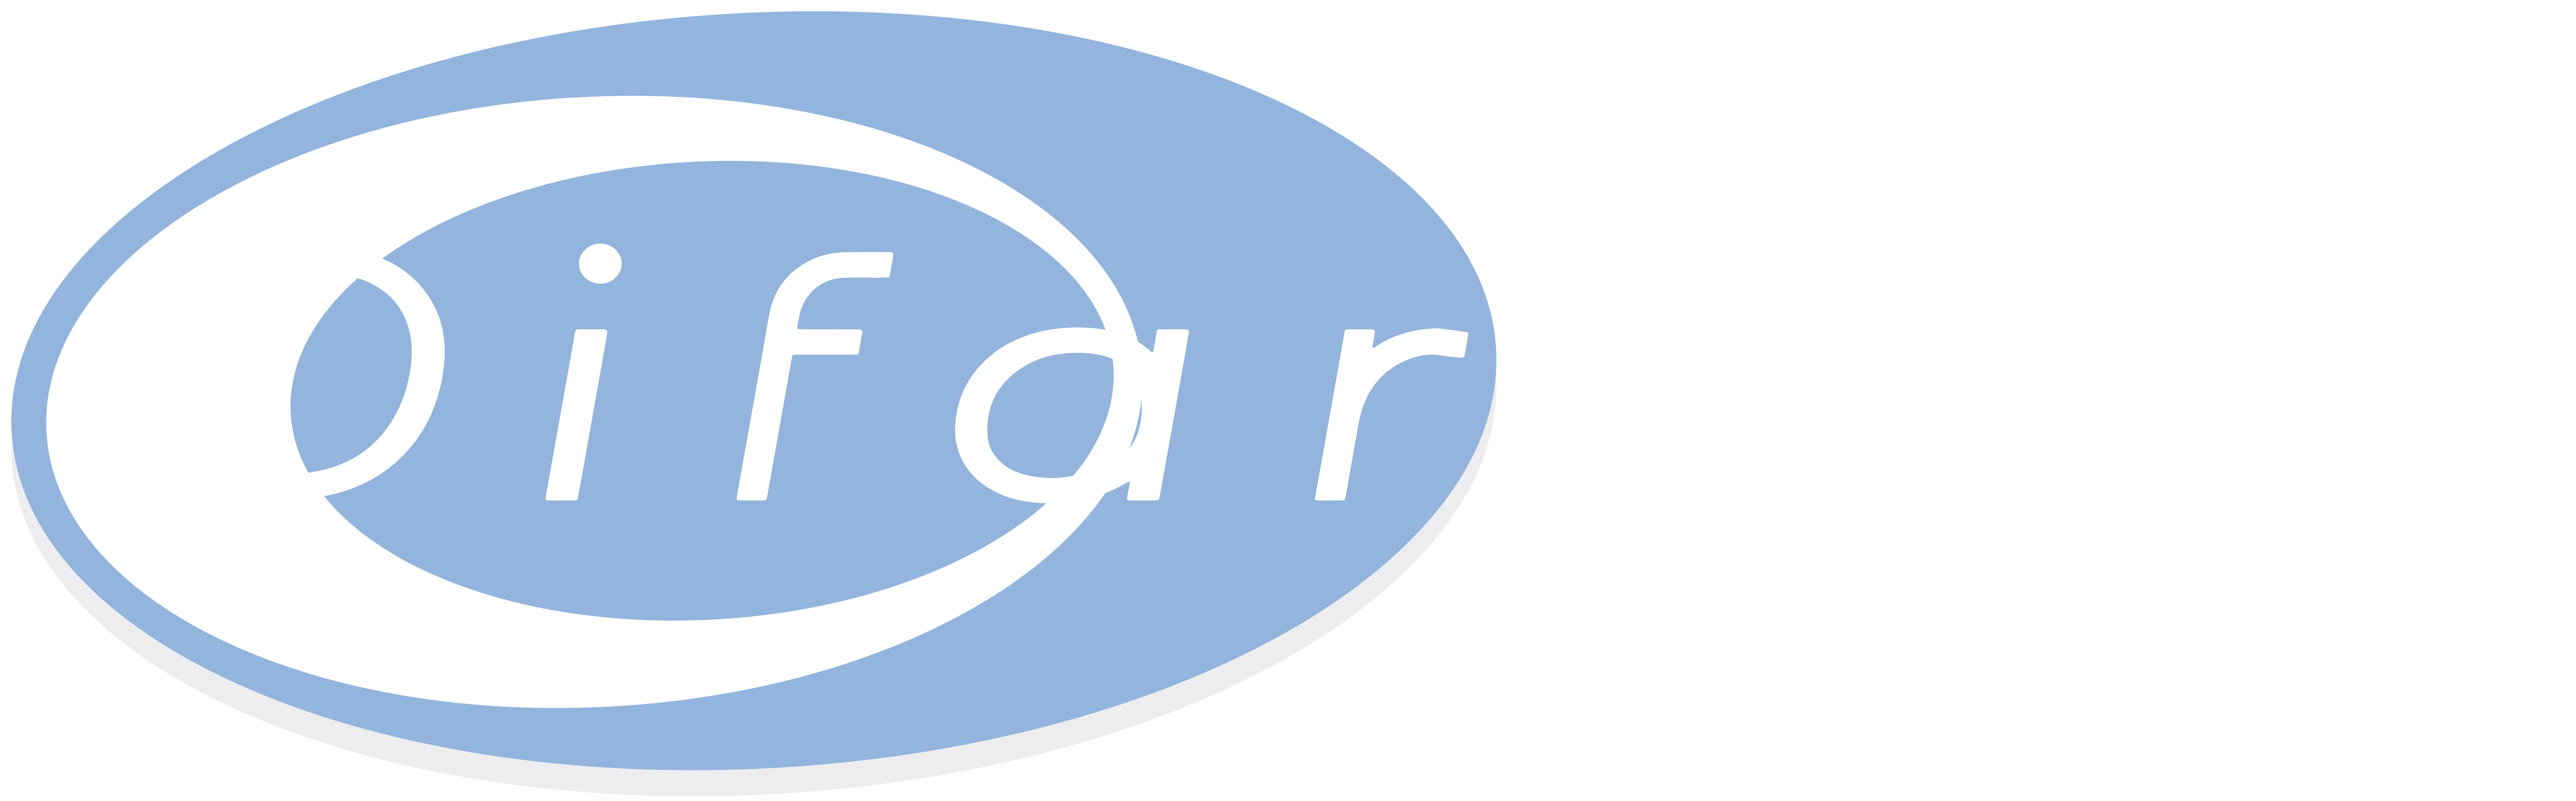 Difarmed logo